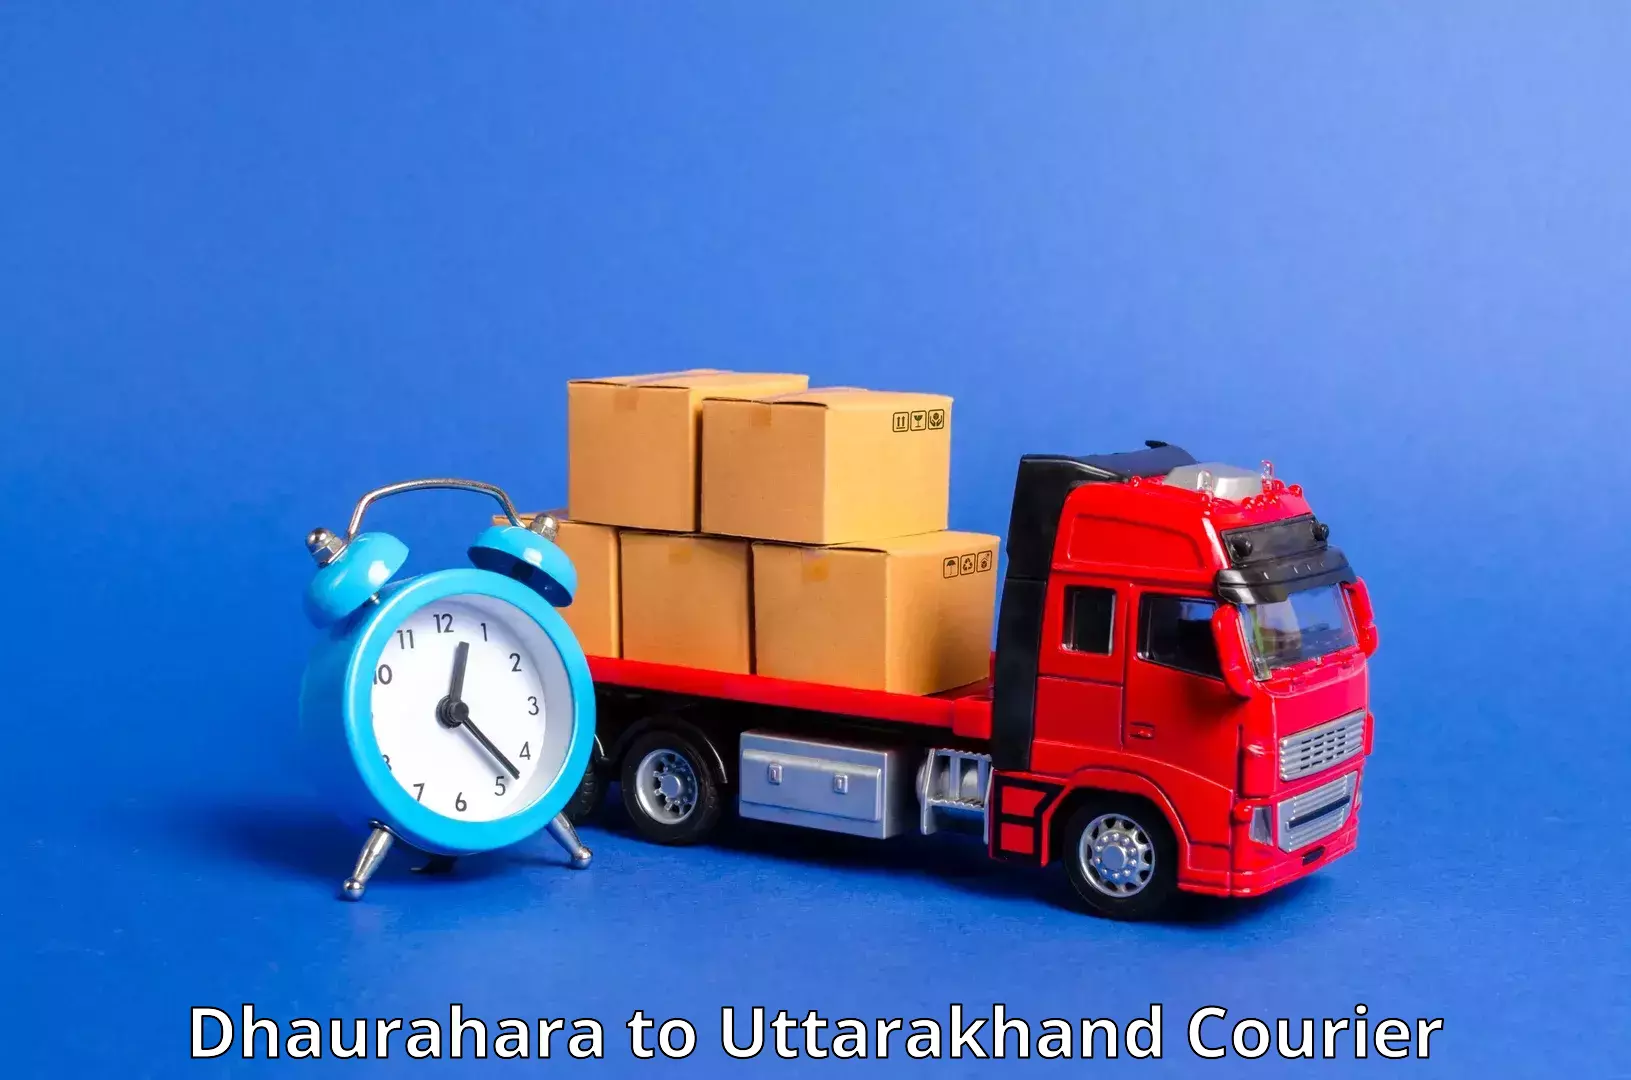 Air courier services Dhaurahara to Rudraprayag